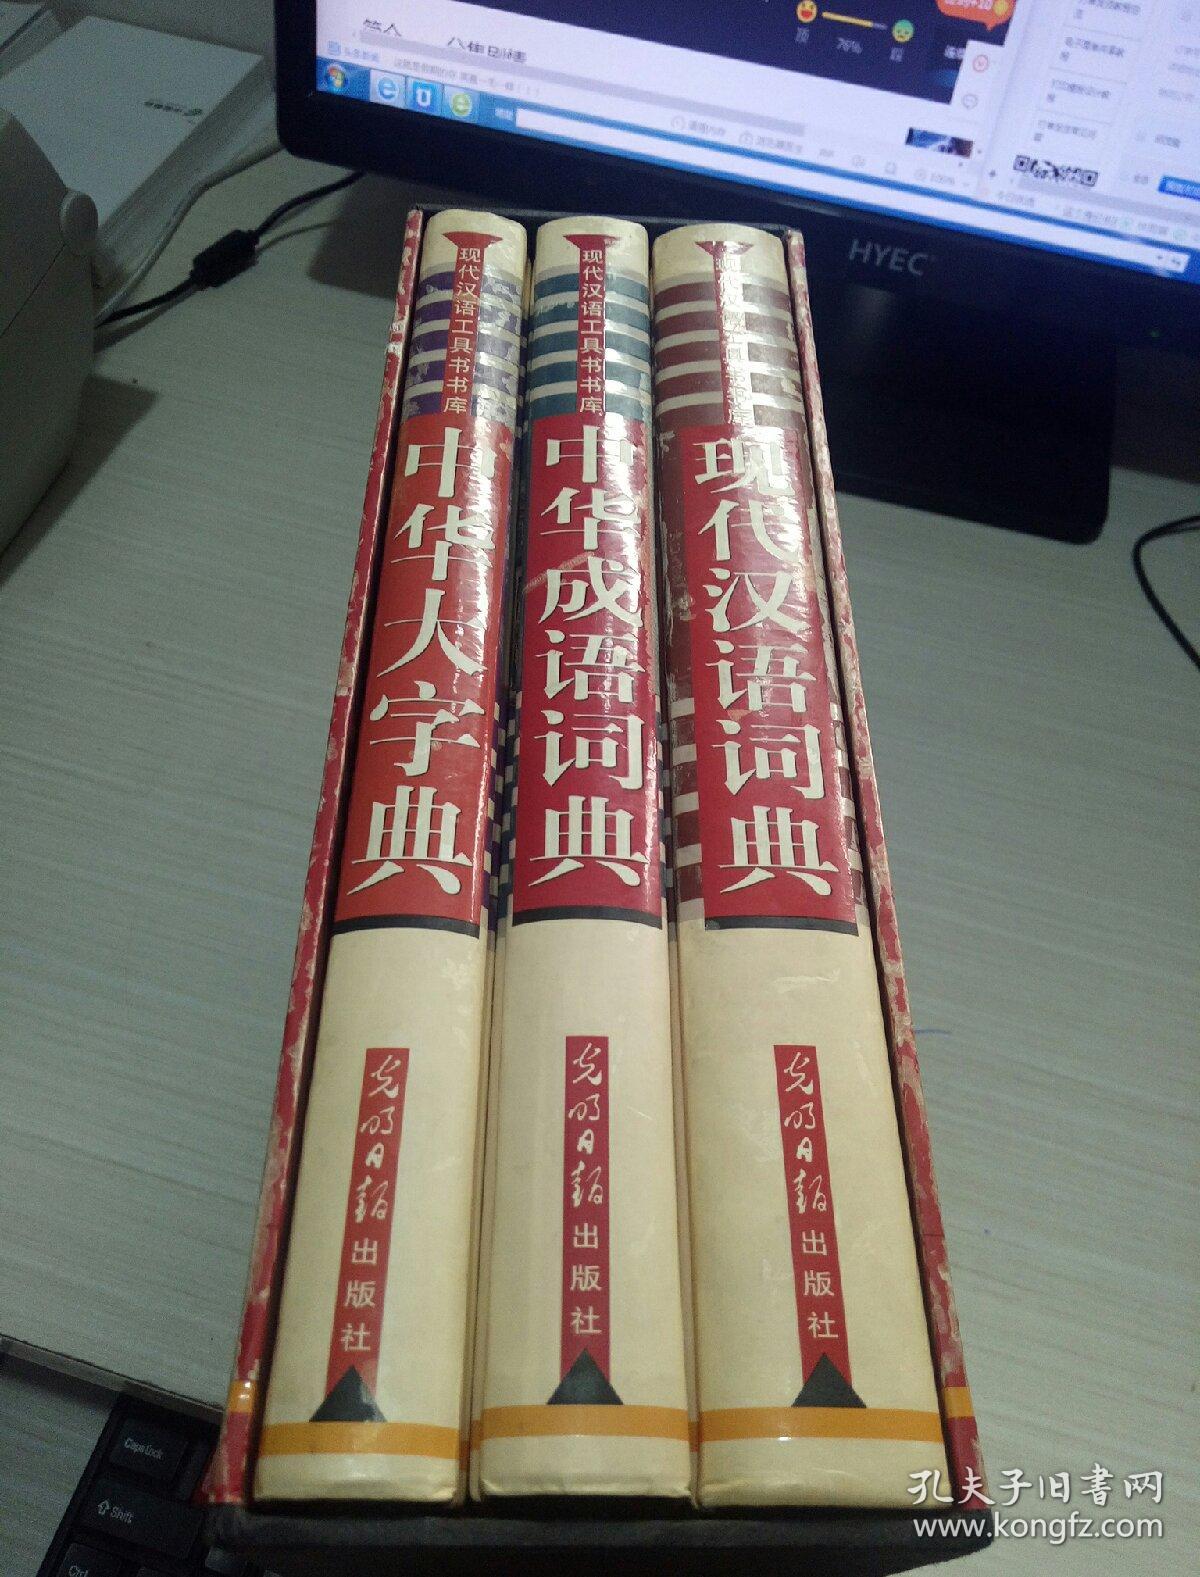 现代汉语工具书书库:中华大字典.现代汉语词典